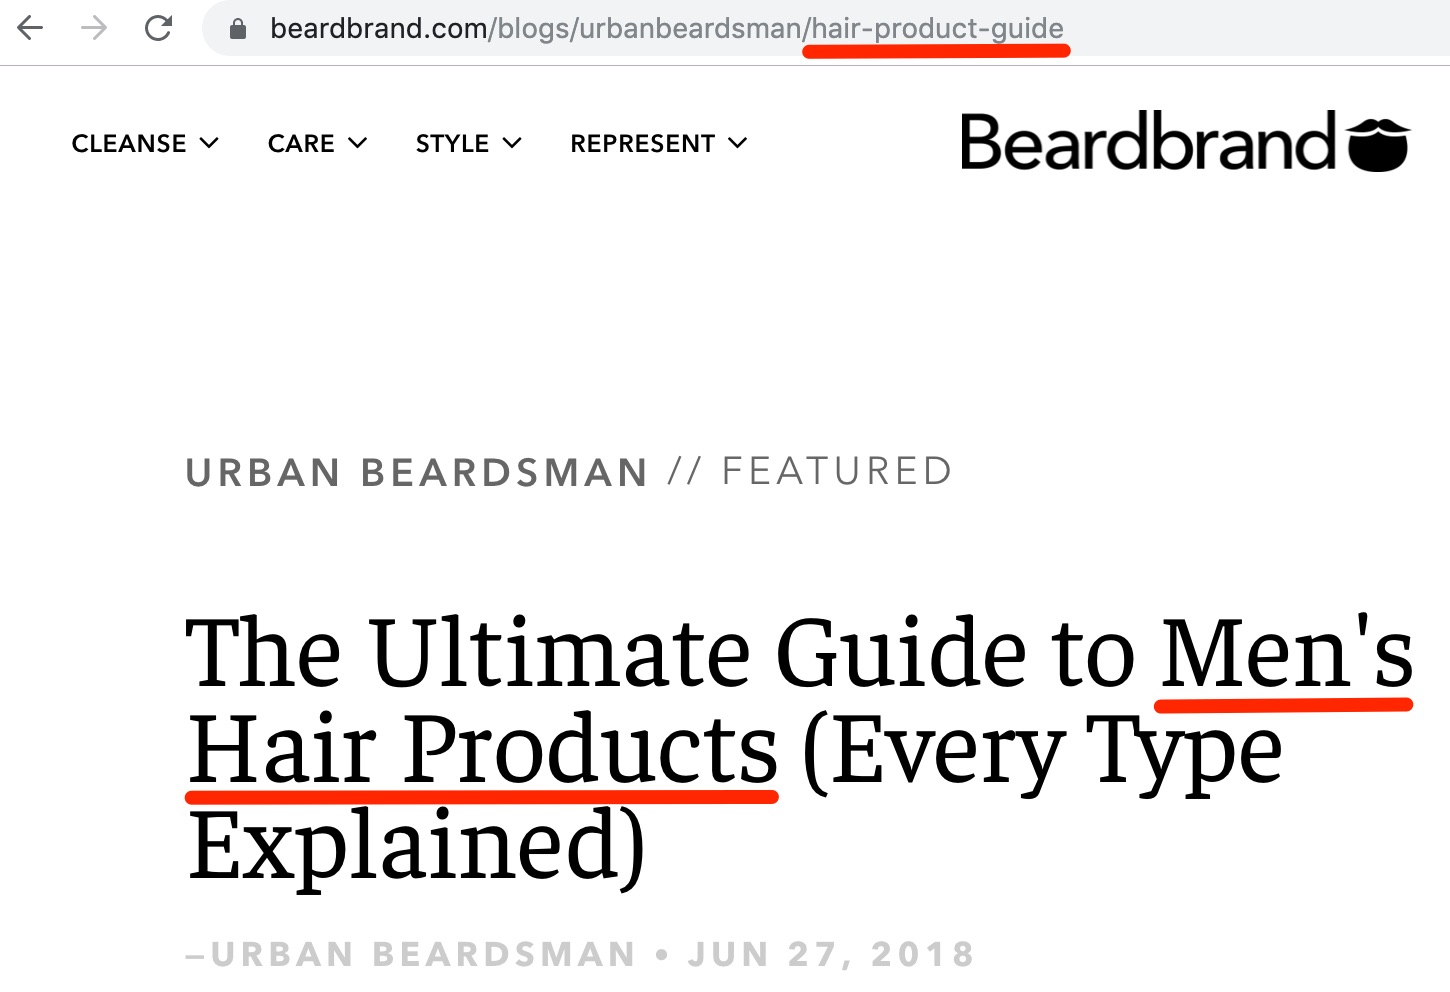 Le guide ultime des produits pour cheveux pour hommes Chaque type a expliqué Beardbrand